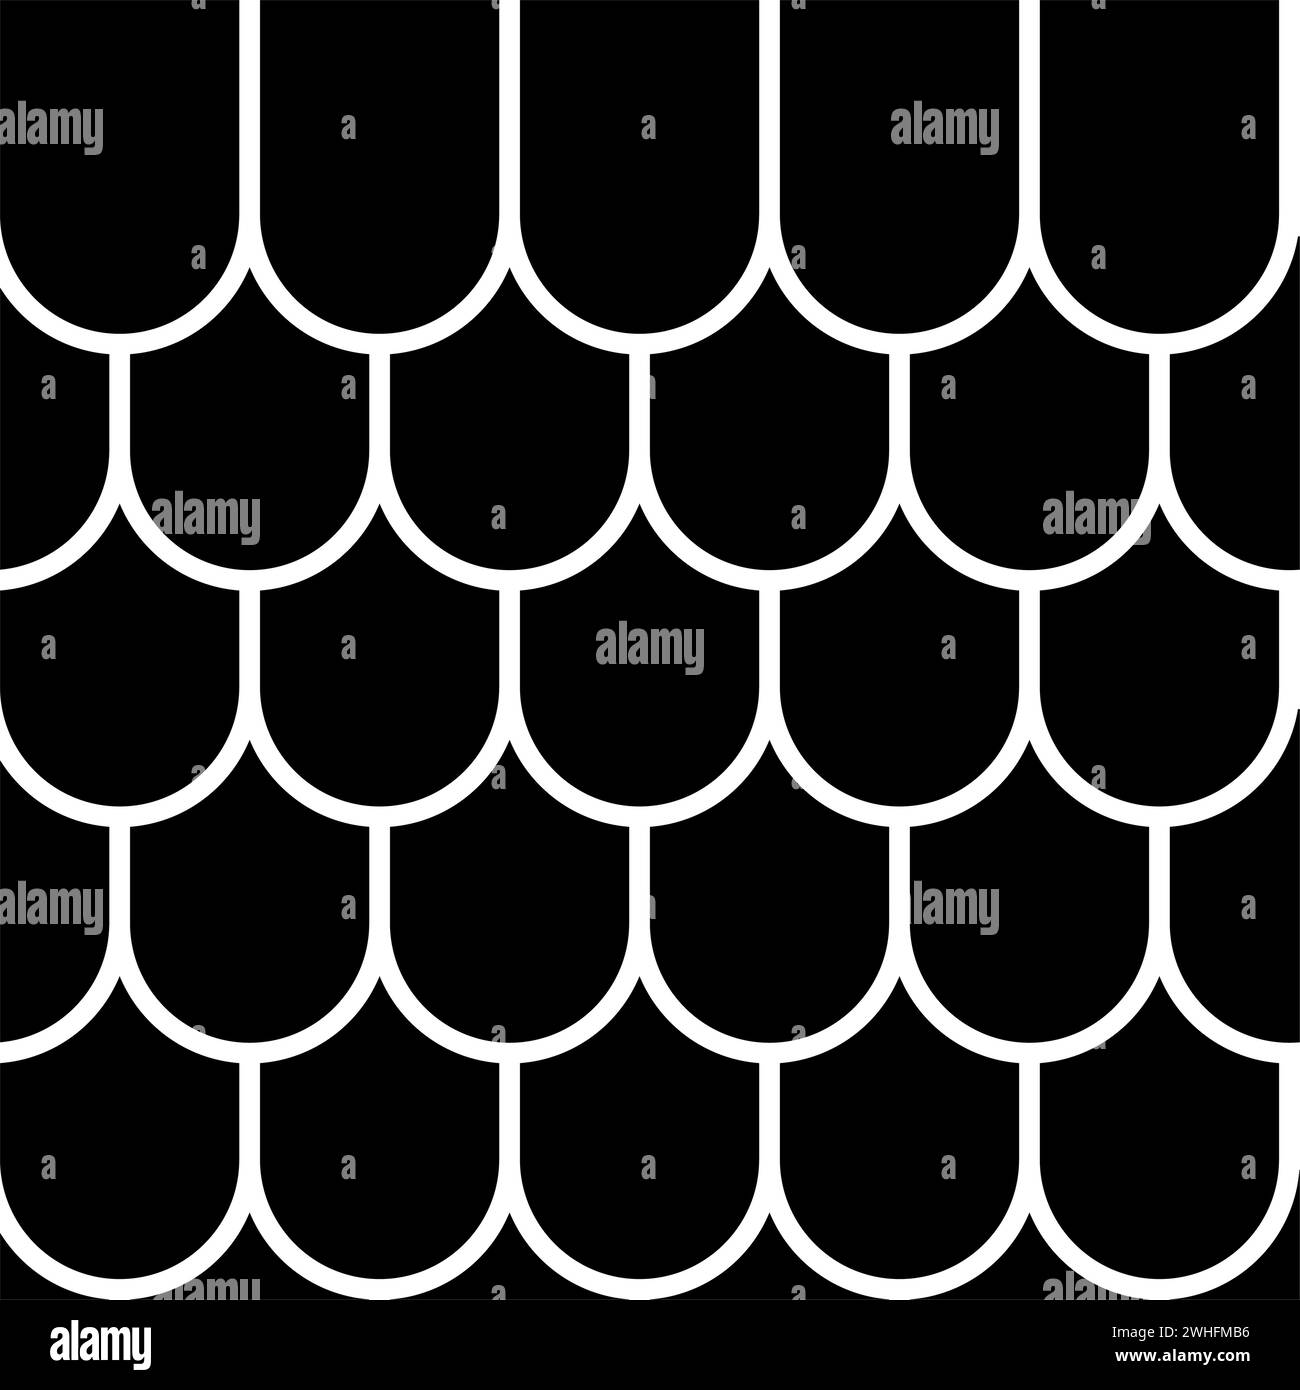 Dachkeramik Fliesen Wellpappe Dachhaus Material Schiefer Icon schwarze Farbe Vektor Illustration Bild flache Art einfach Stock Vektor